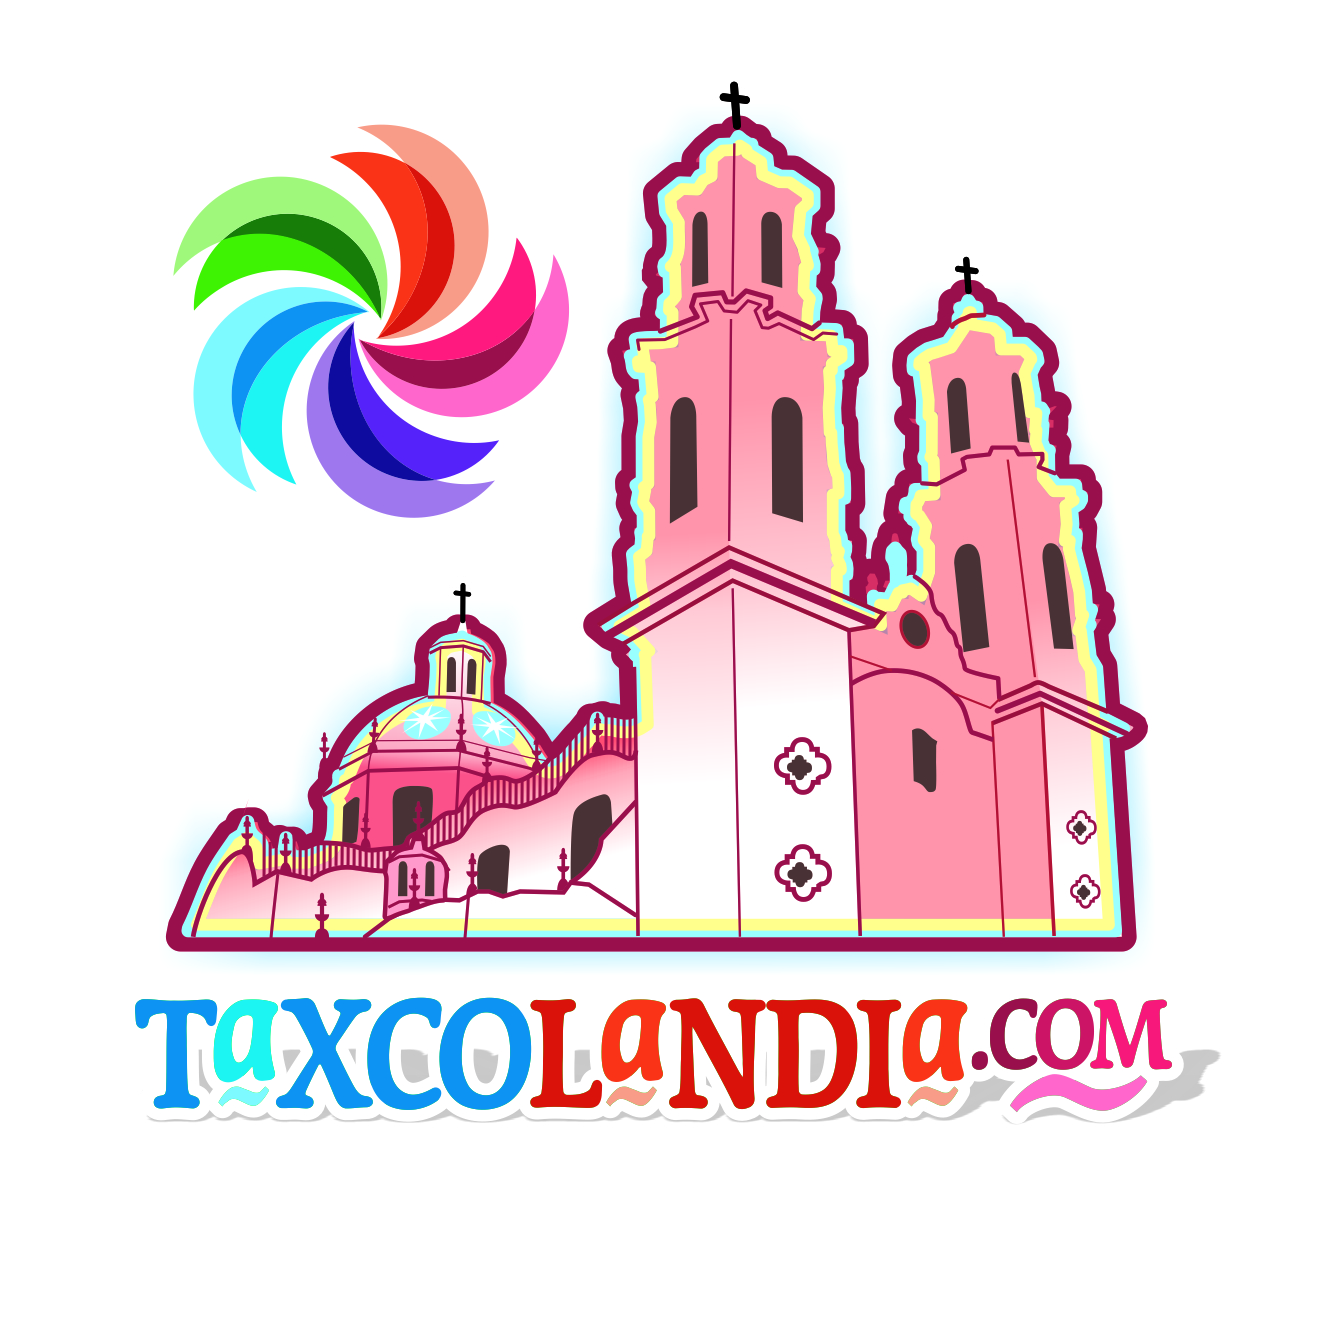 Visita: Taxcolandia.com :: El Portal de Taxco, Gro::